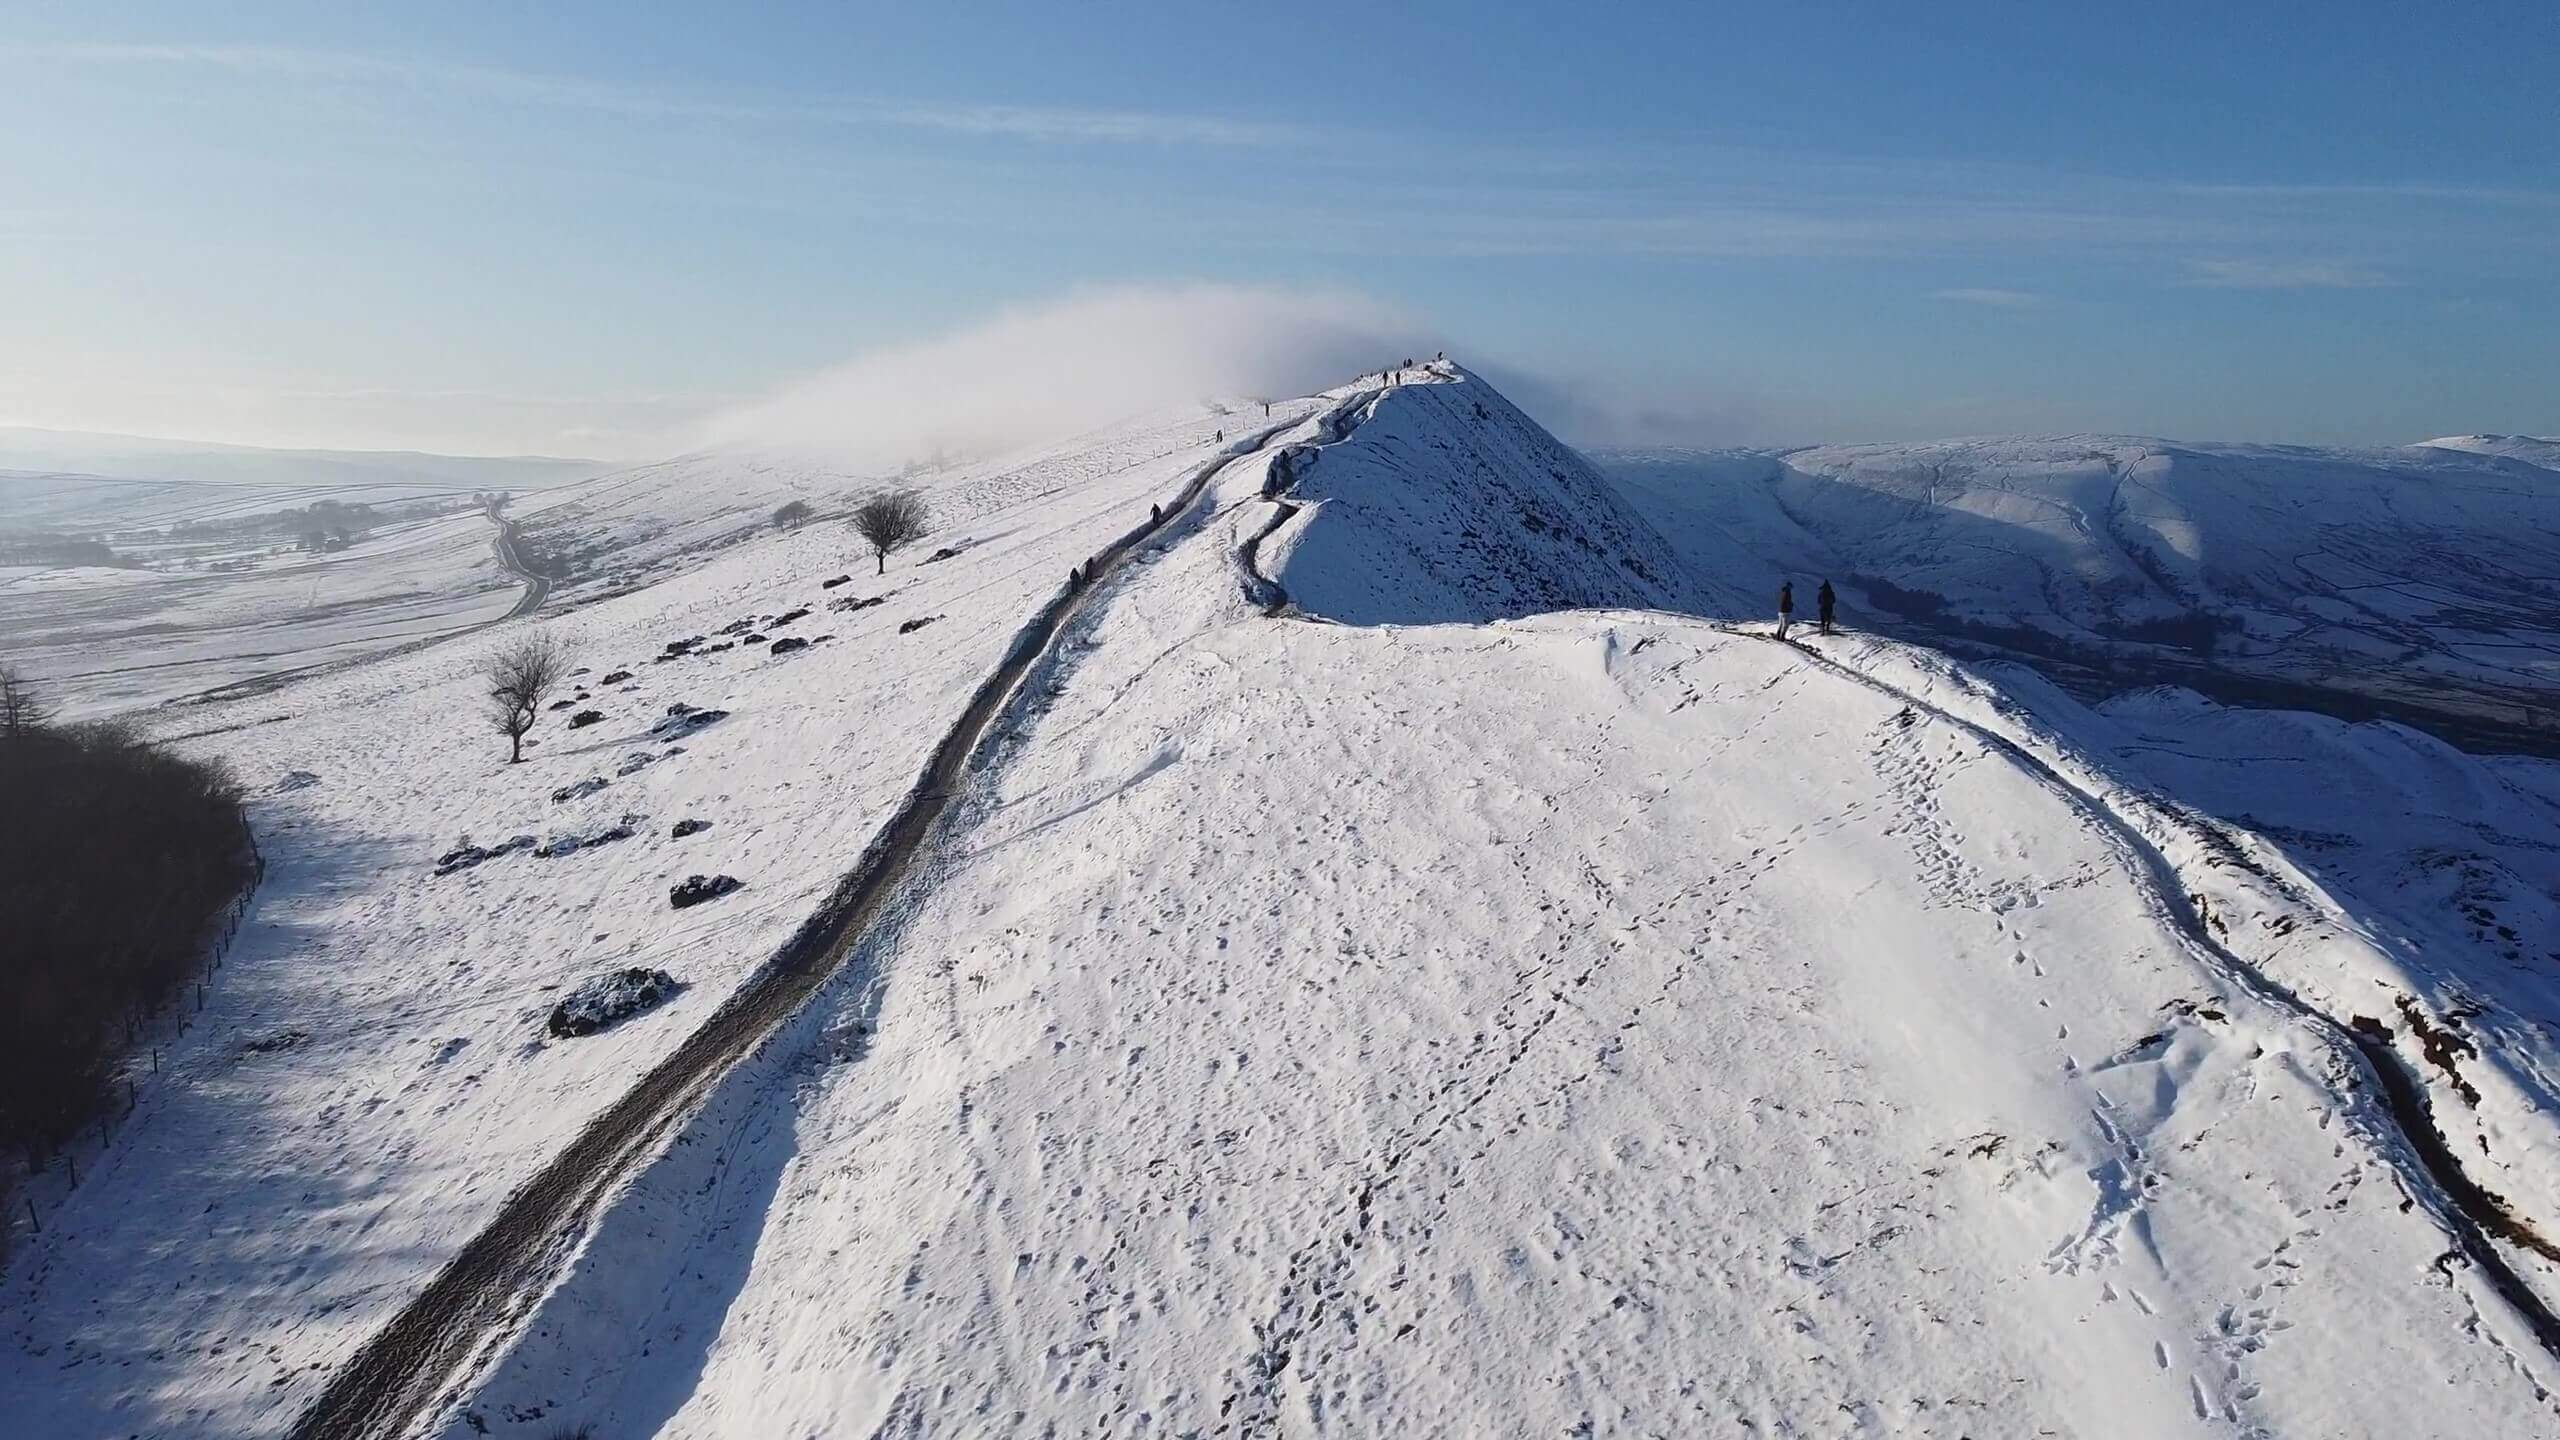 雪山の登山道と奥に広がる山々と空をドローンを使用して撮影した動画